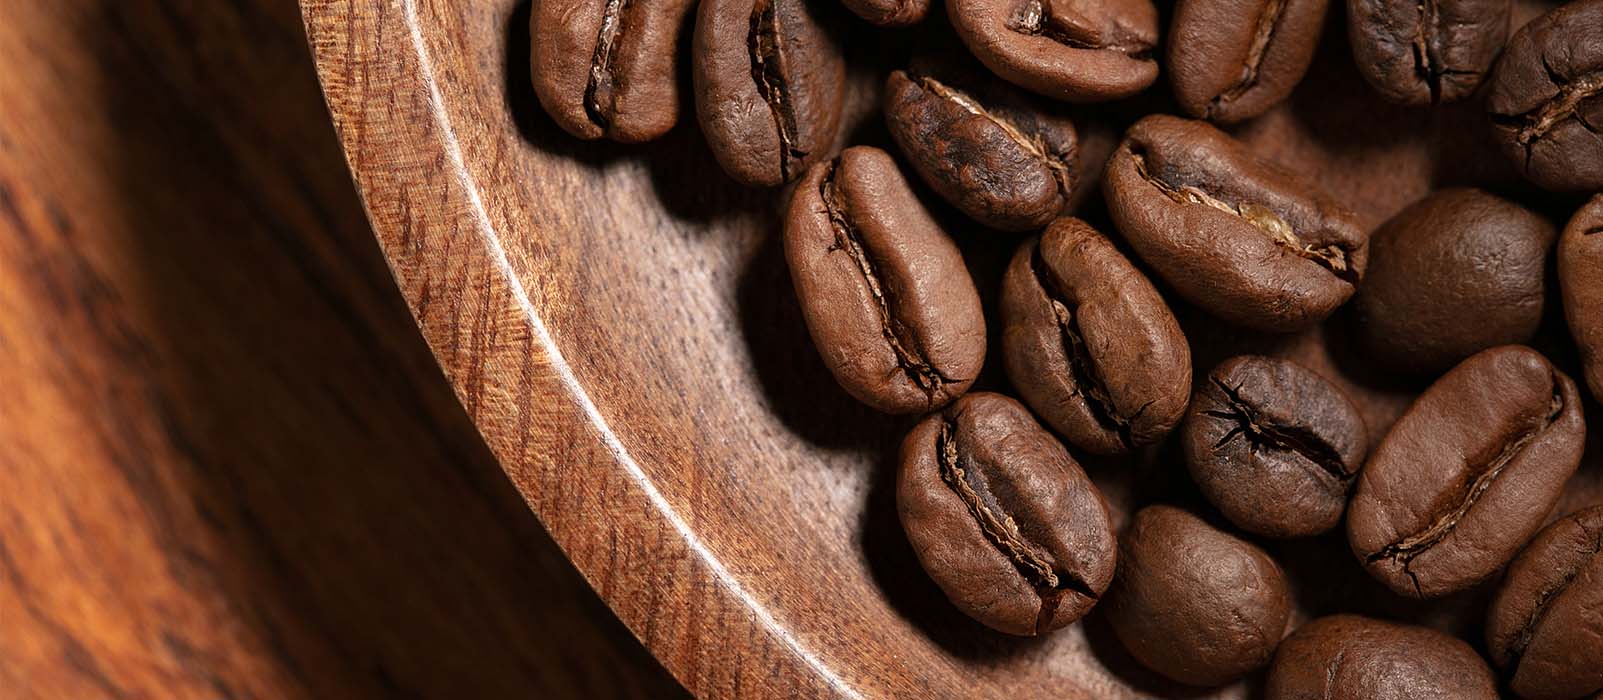 meilleurs cafés en grain pour cafetière à piston